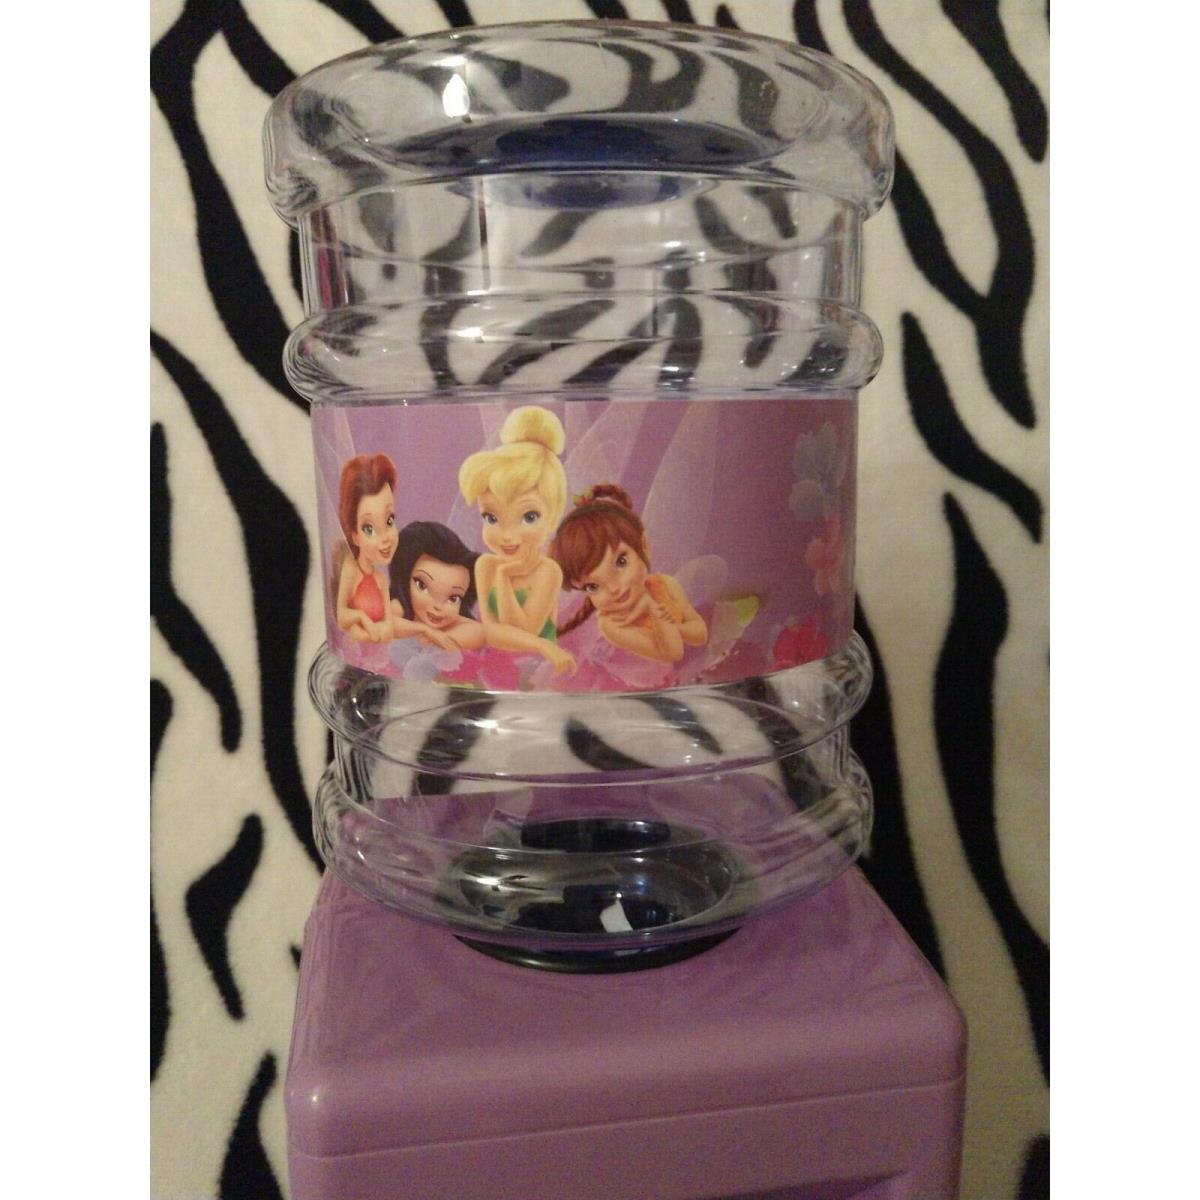 Disney Fairies Tinkerbell Water Dispenser Water Cooler For Kids